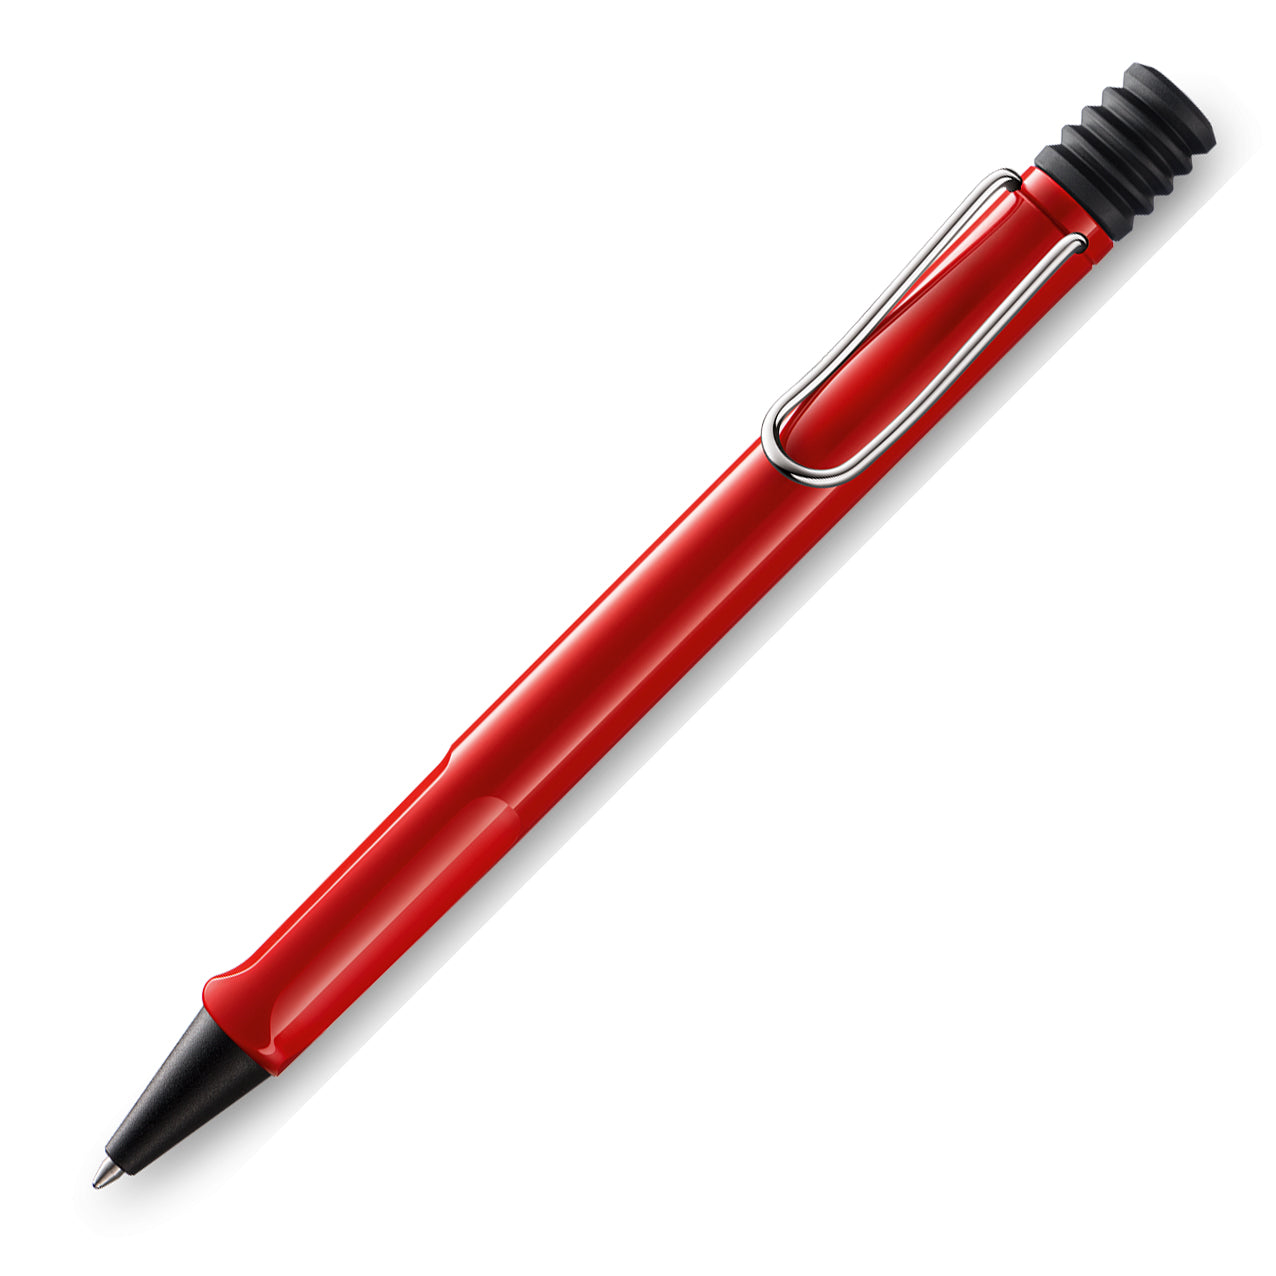 Lamy Safari Ballpoint Pen Red